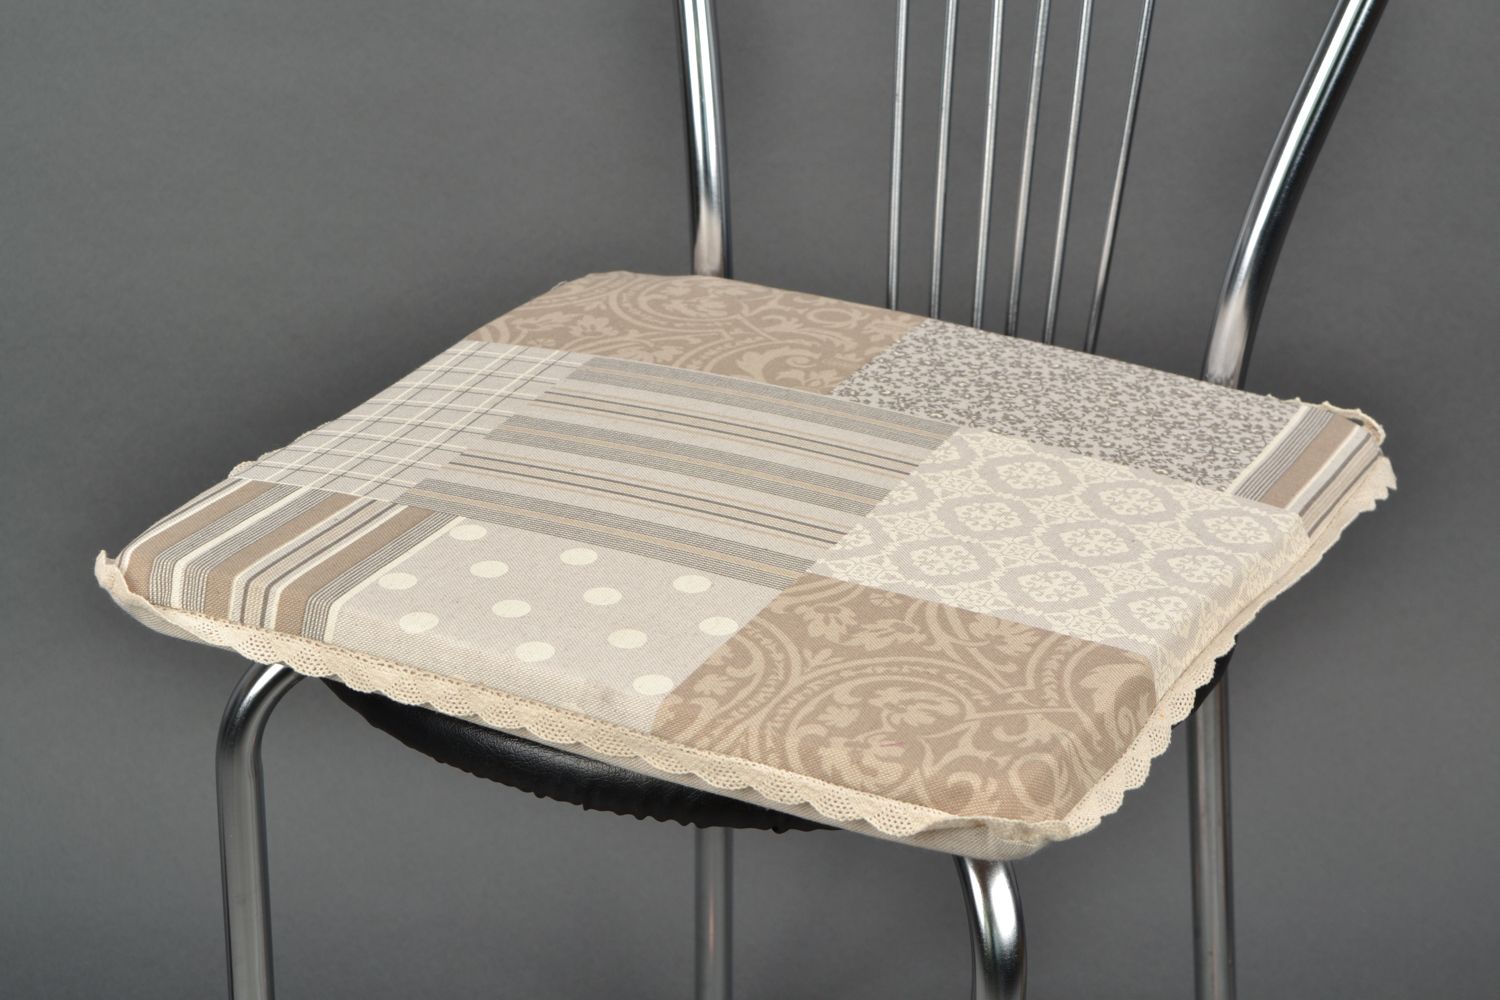 Galette de chaise beige faite main design avec imprimé imitation patchwork photo 1